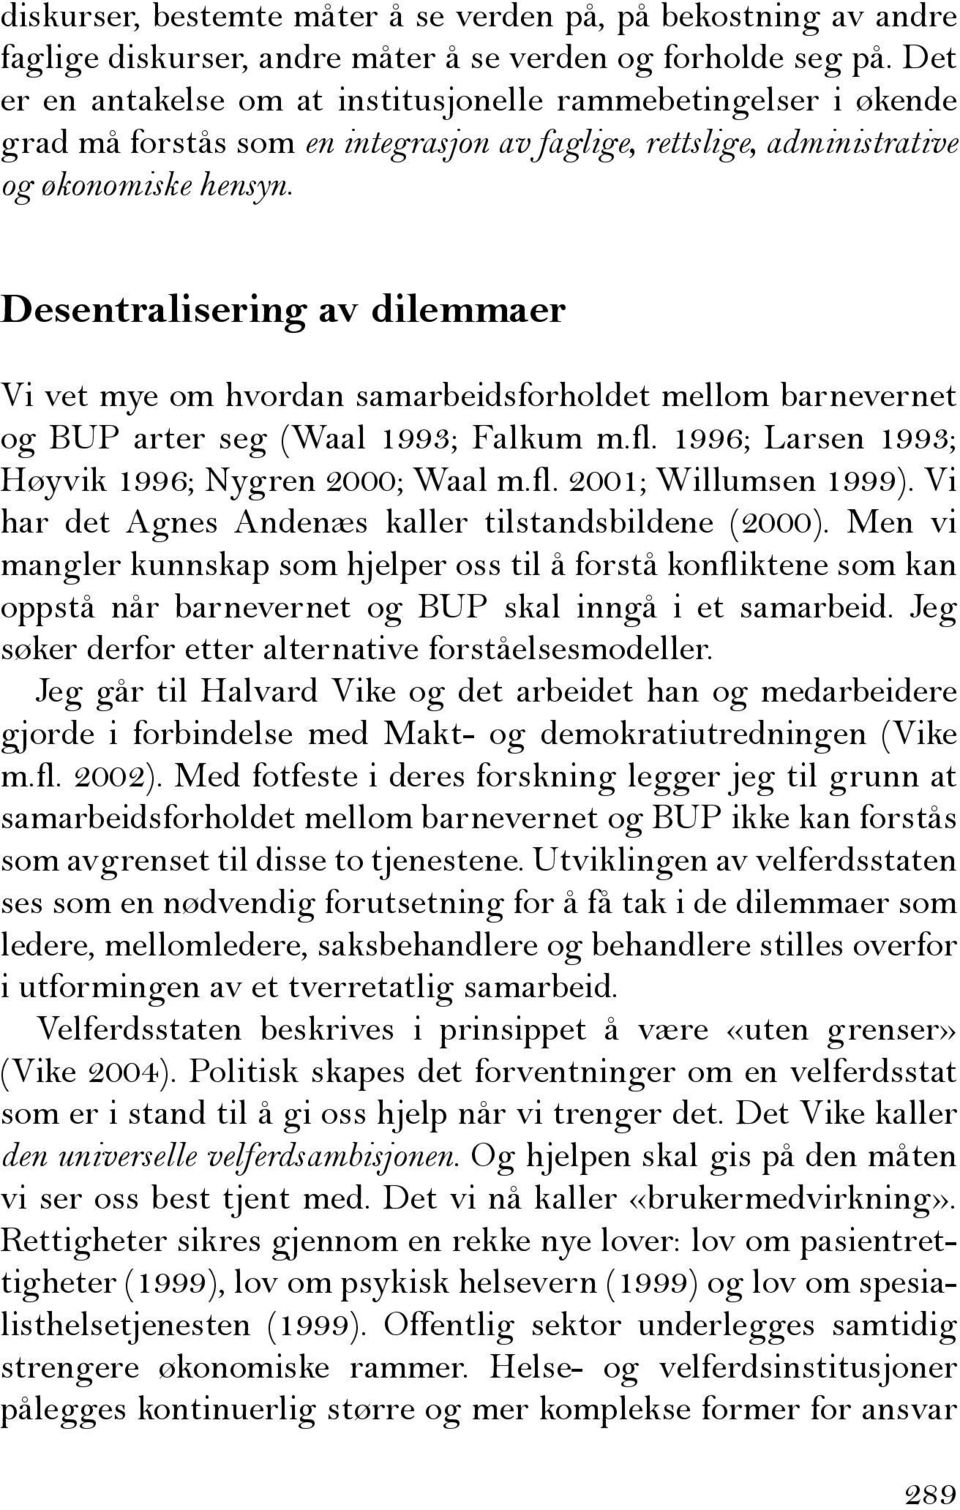 Desentralisering av dilemmaer Vi vet mye om hvordan samarbeidsforholdet mellom barnevernet og BUP arter seg (Waal 1993; Falkum m.fl. 1996; Larsen 1993; Høyvik 1996; Nygren 2000; Waal m.fl. 2001; Willumsen 1999).